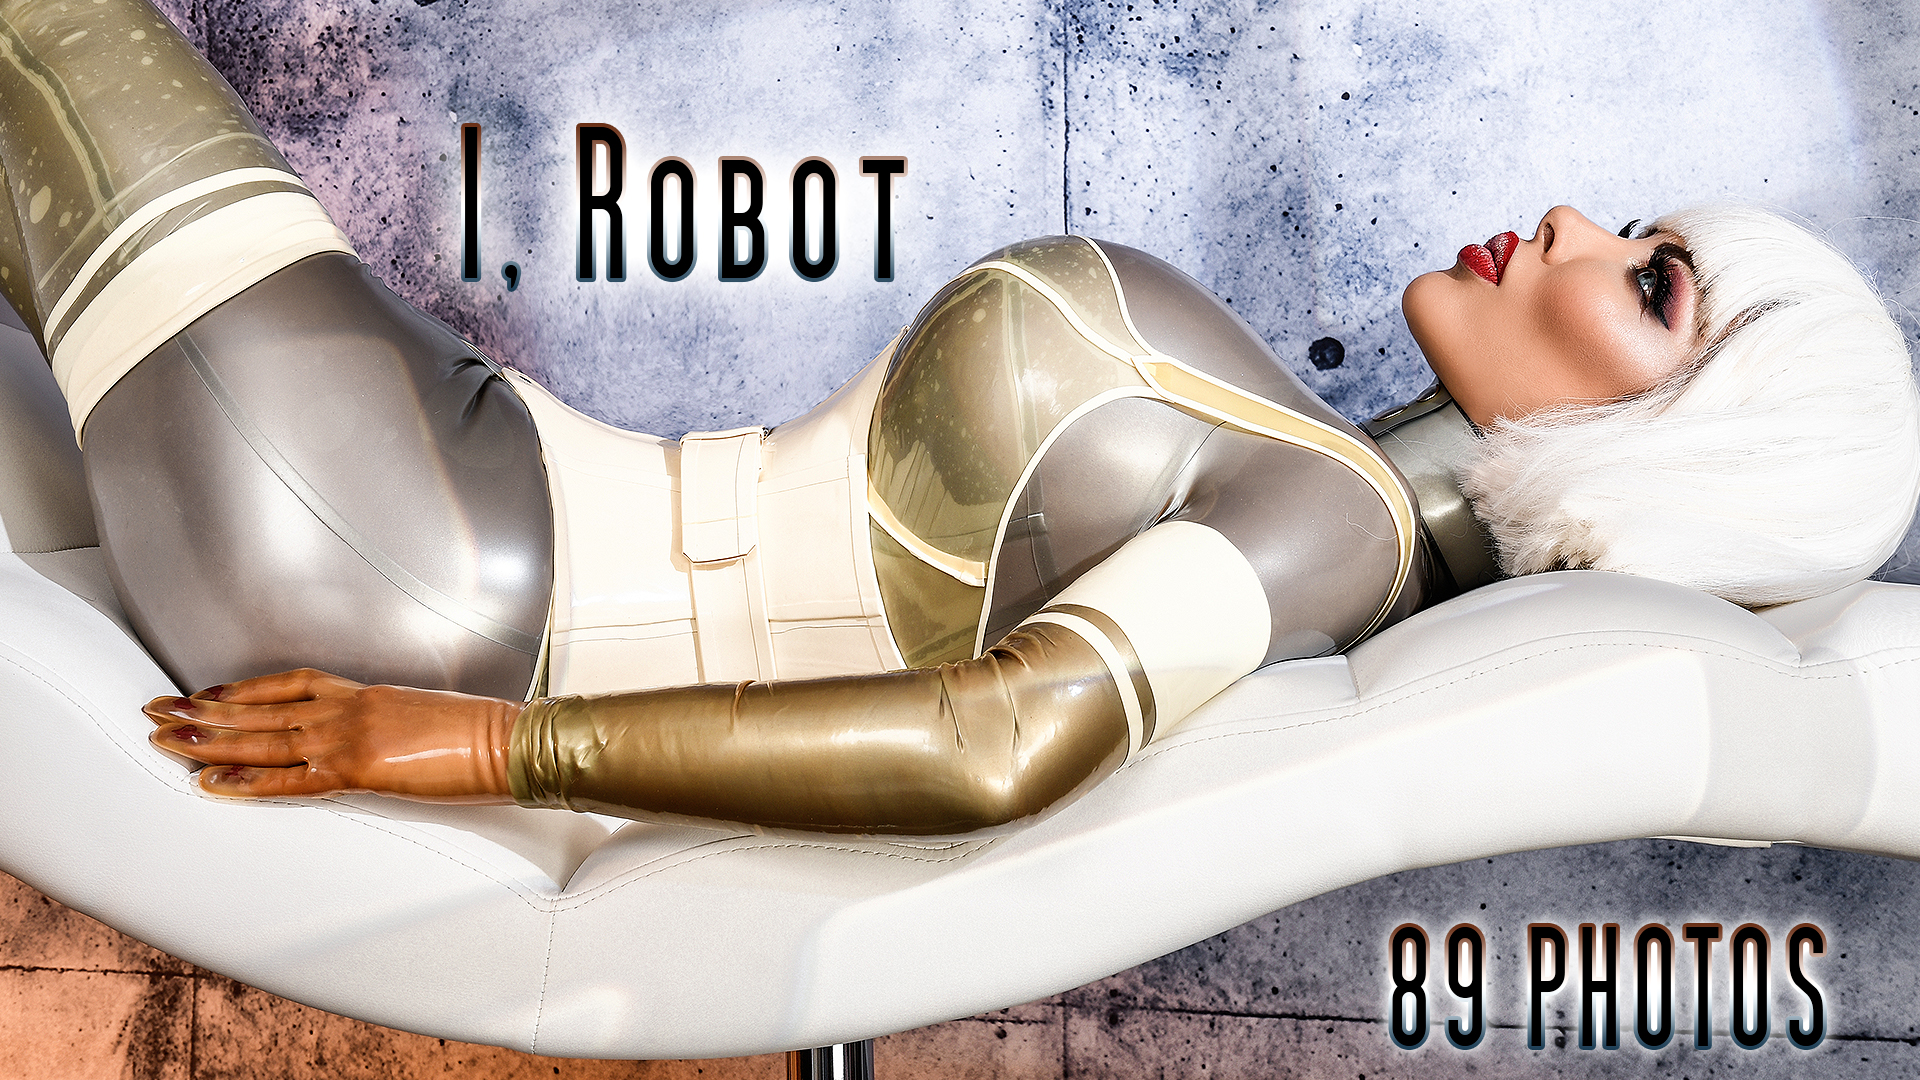 025 - I, Robot Cover 1.jpg